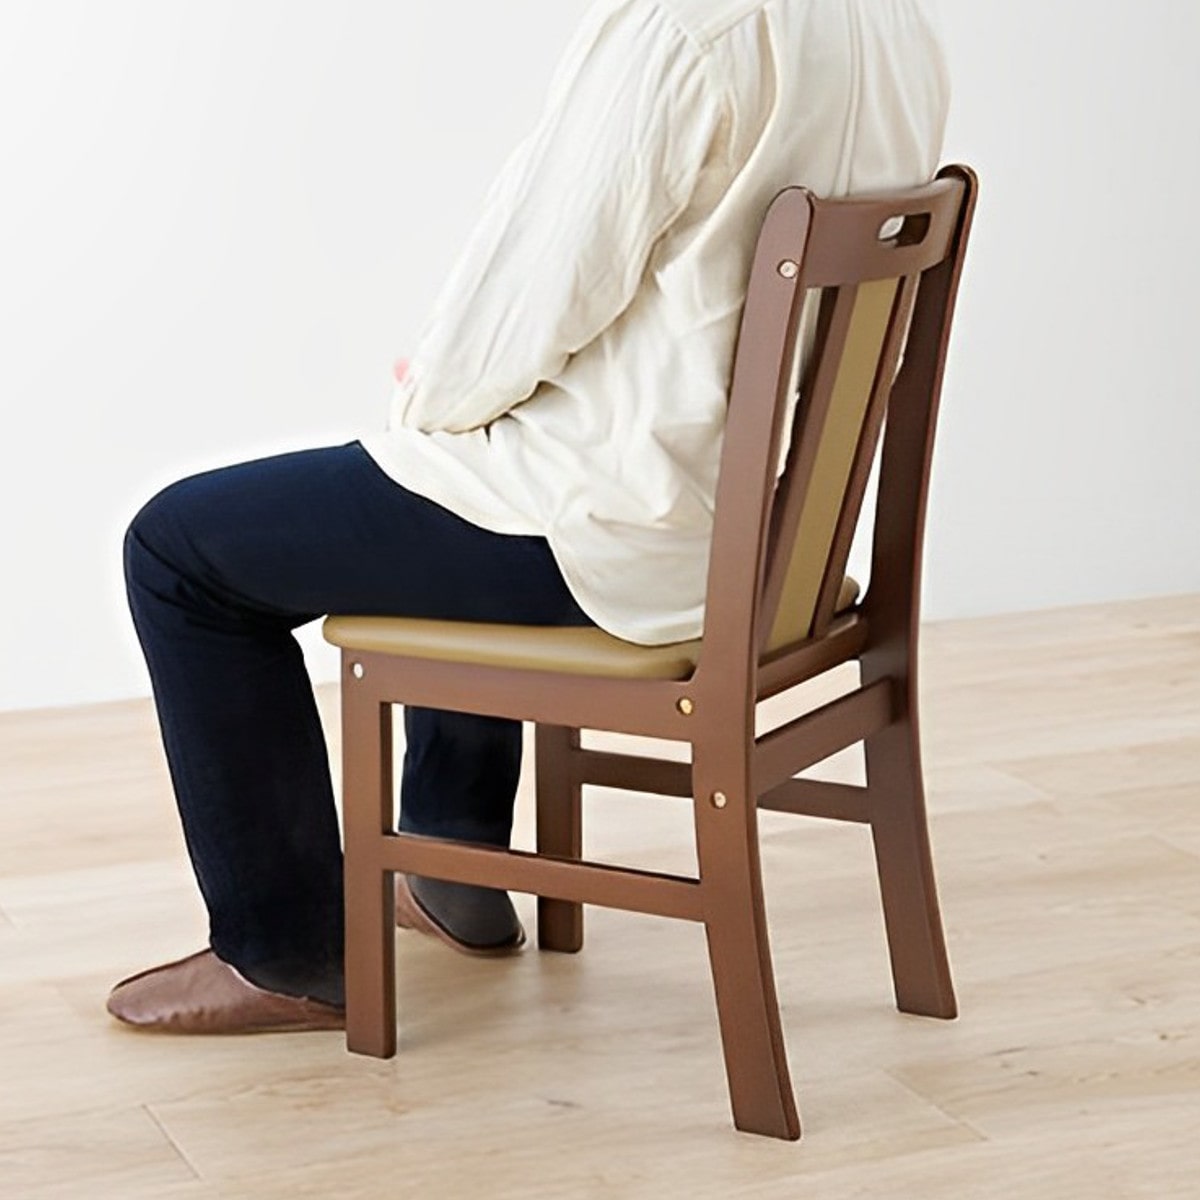 【格安大特価】CC ＜７脚セット＞洋風チェア 木製椅子 クッション座面 幅430mm×奥行450mm×高さ810mm/480(座面)mm〈4842968〉 木製フレーム